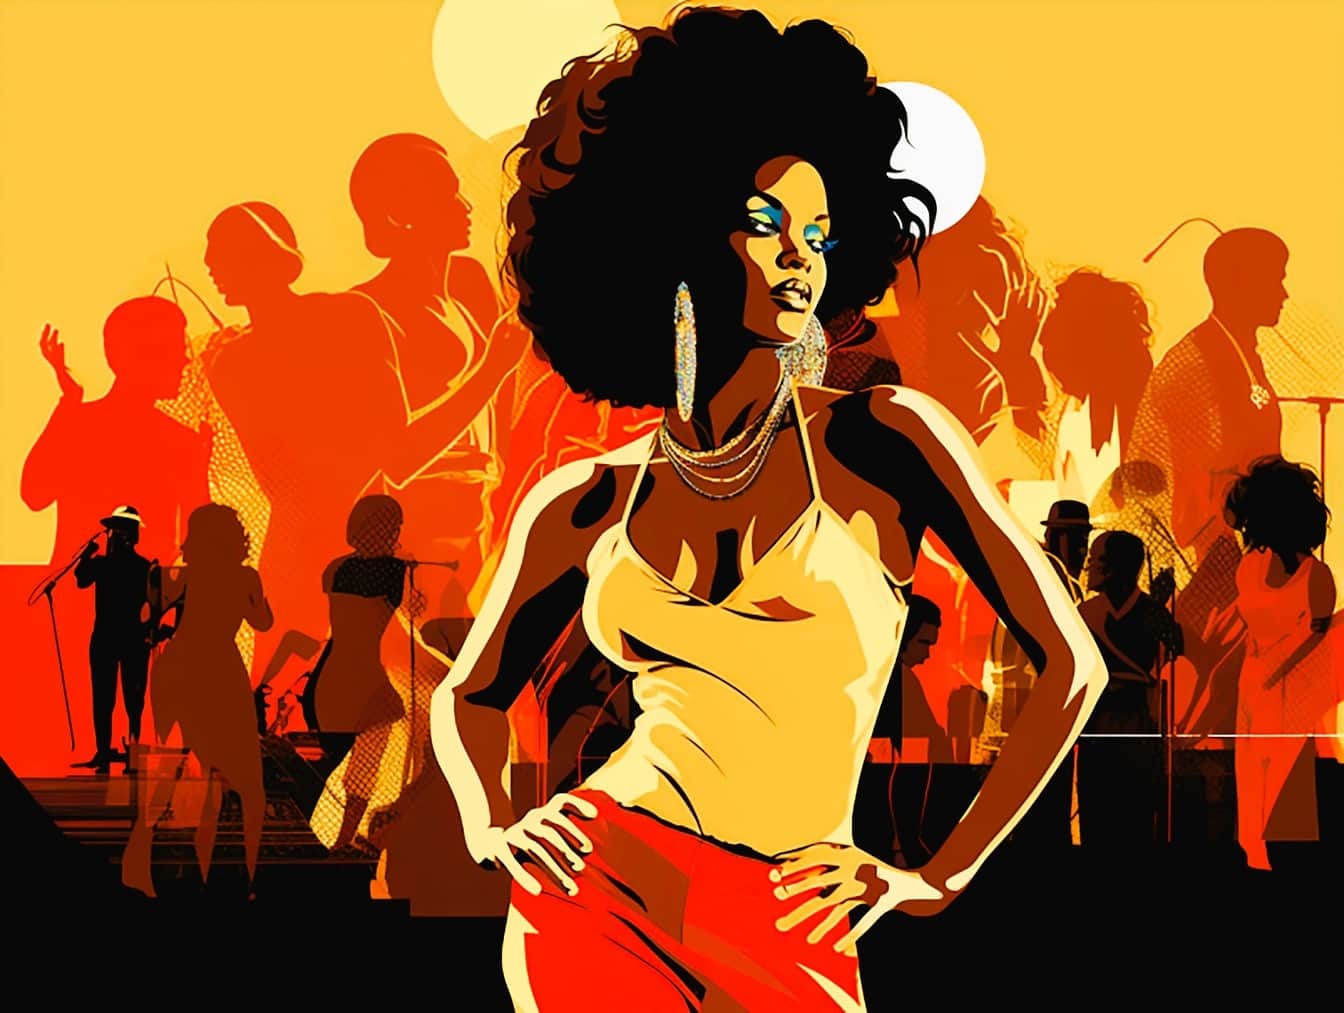 Afrikansk ung kvindelig danser i diskotek i pop art illustrationsstil